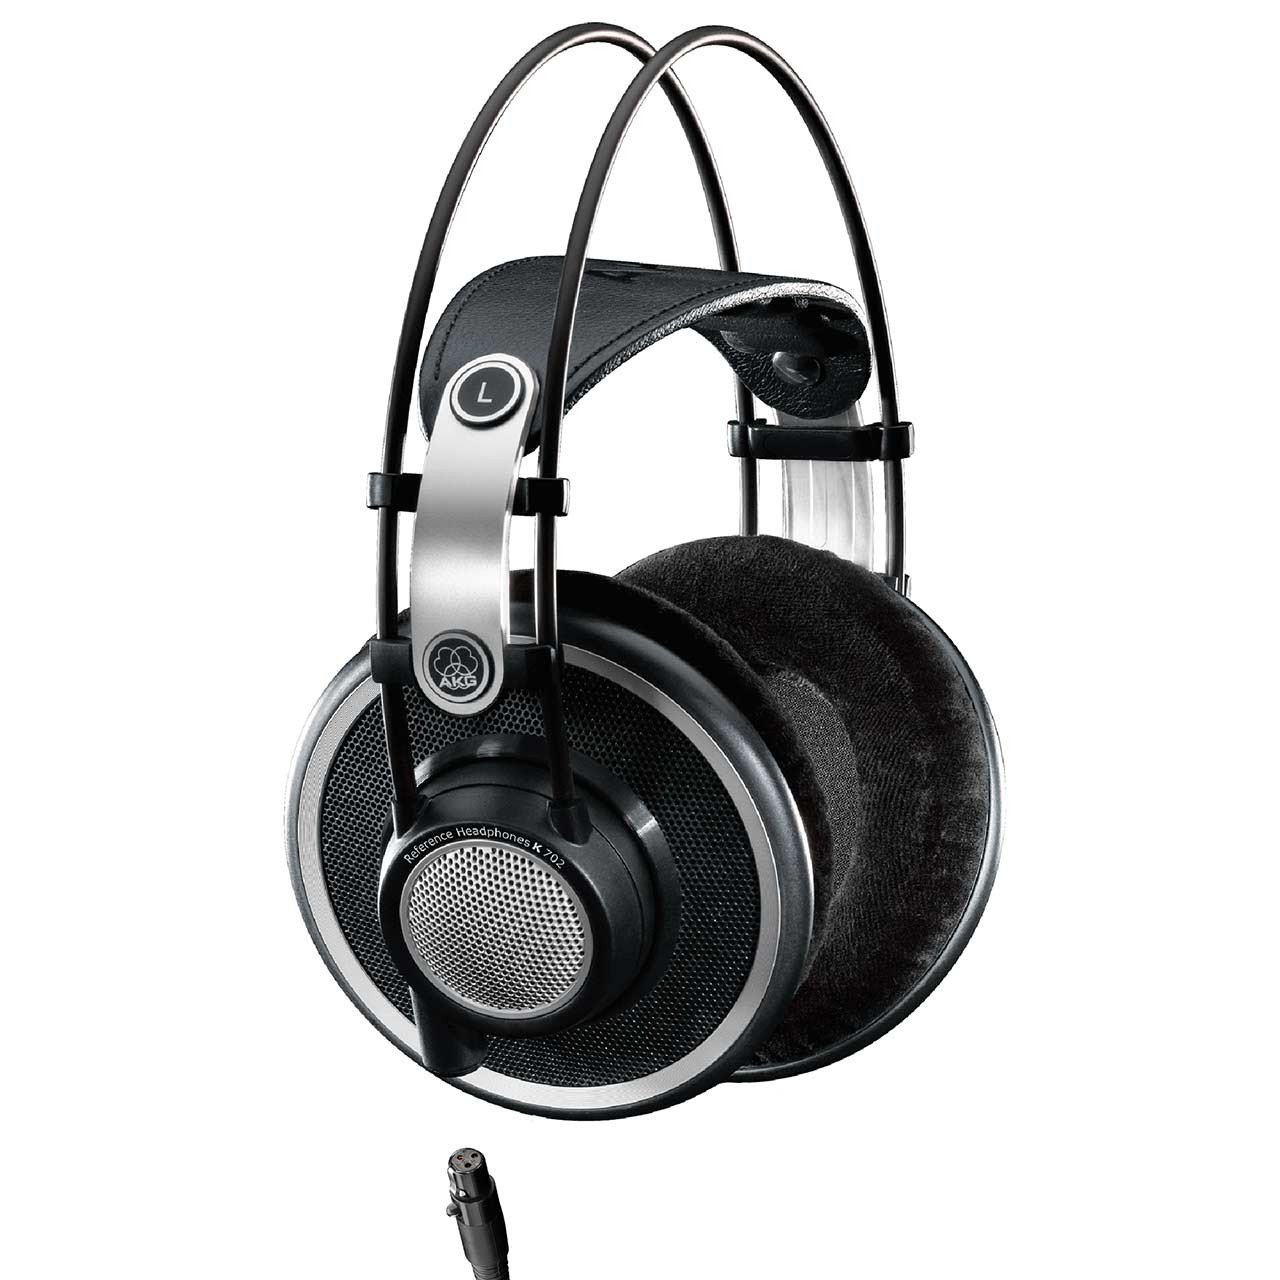 Open Headphones - AKG K702 Professional Reference Open Around-Ear Studio Headphones